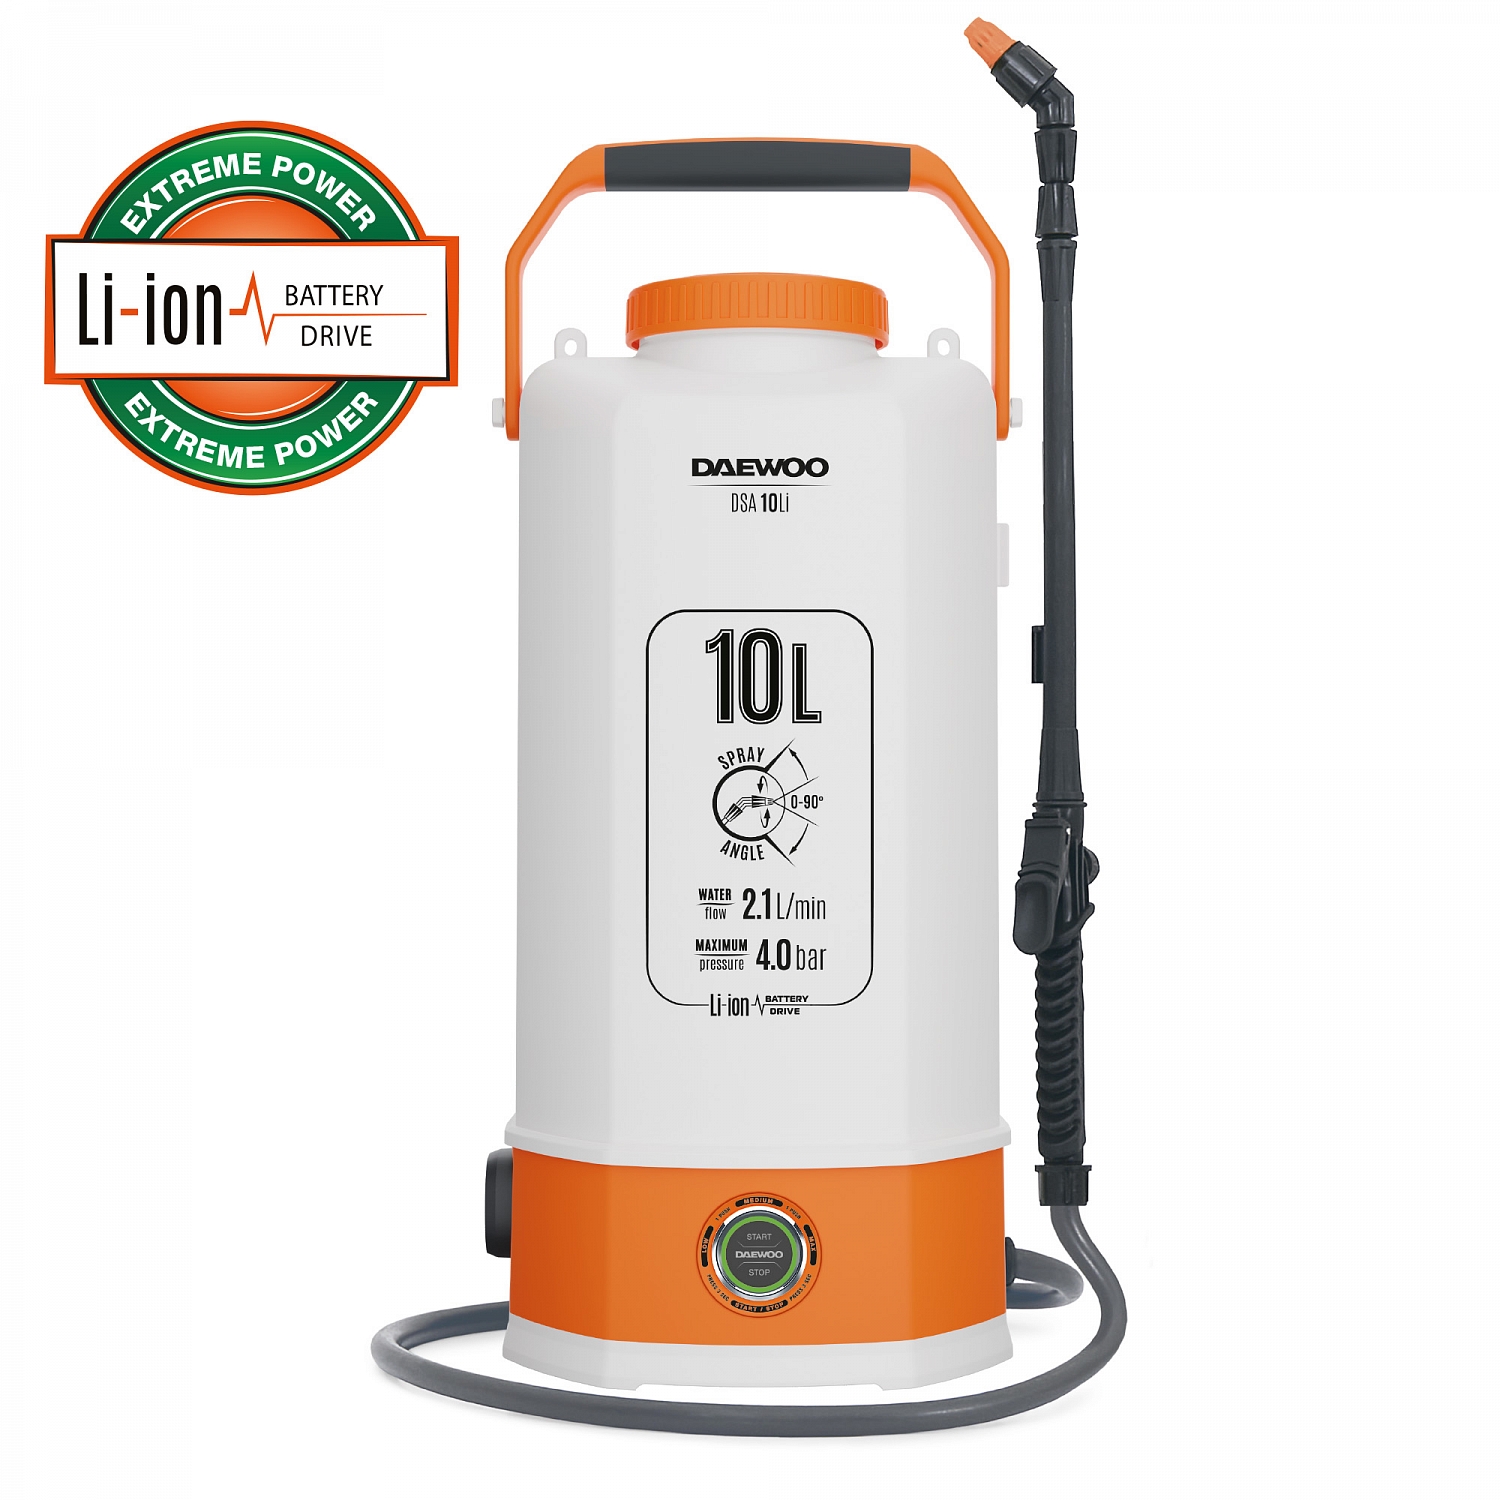 Battery sprayer DAEWOO DSA 10Li